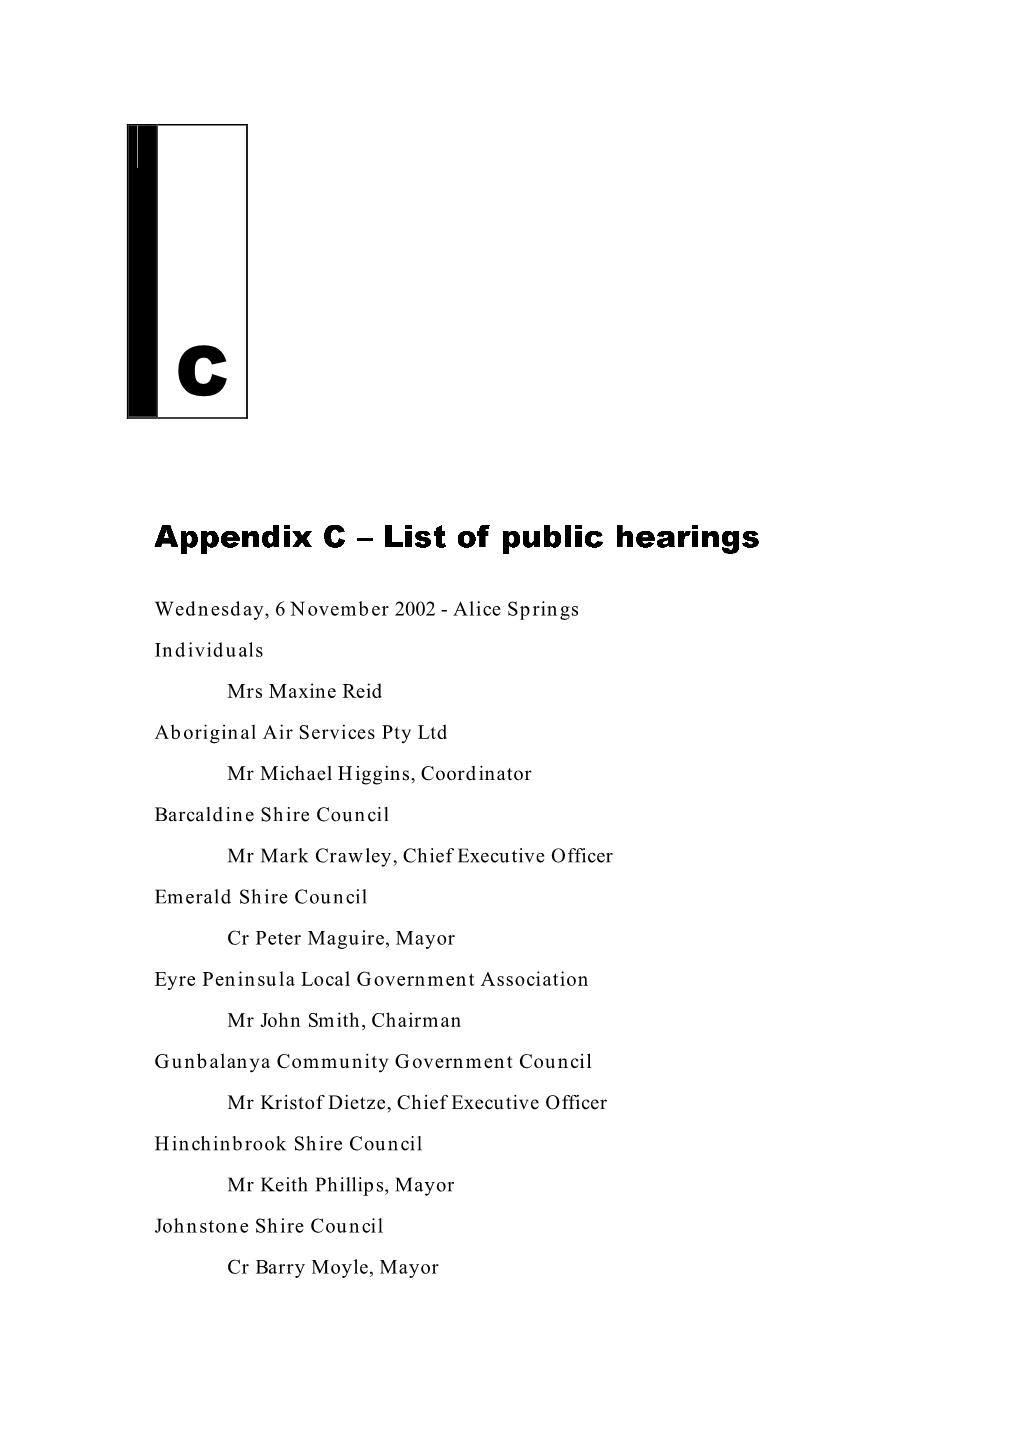 Appendix C – List of Public Hearings